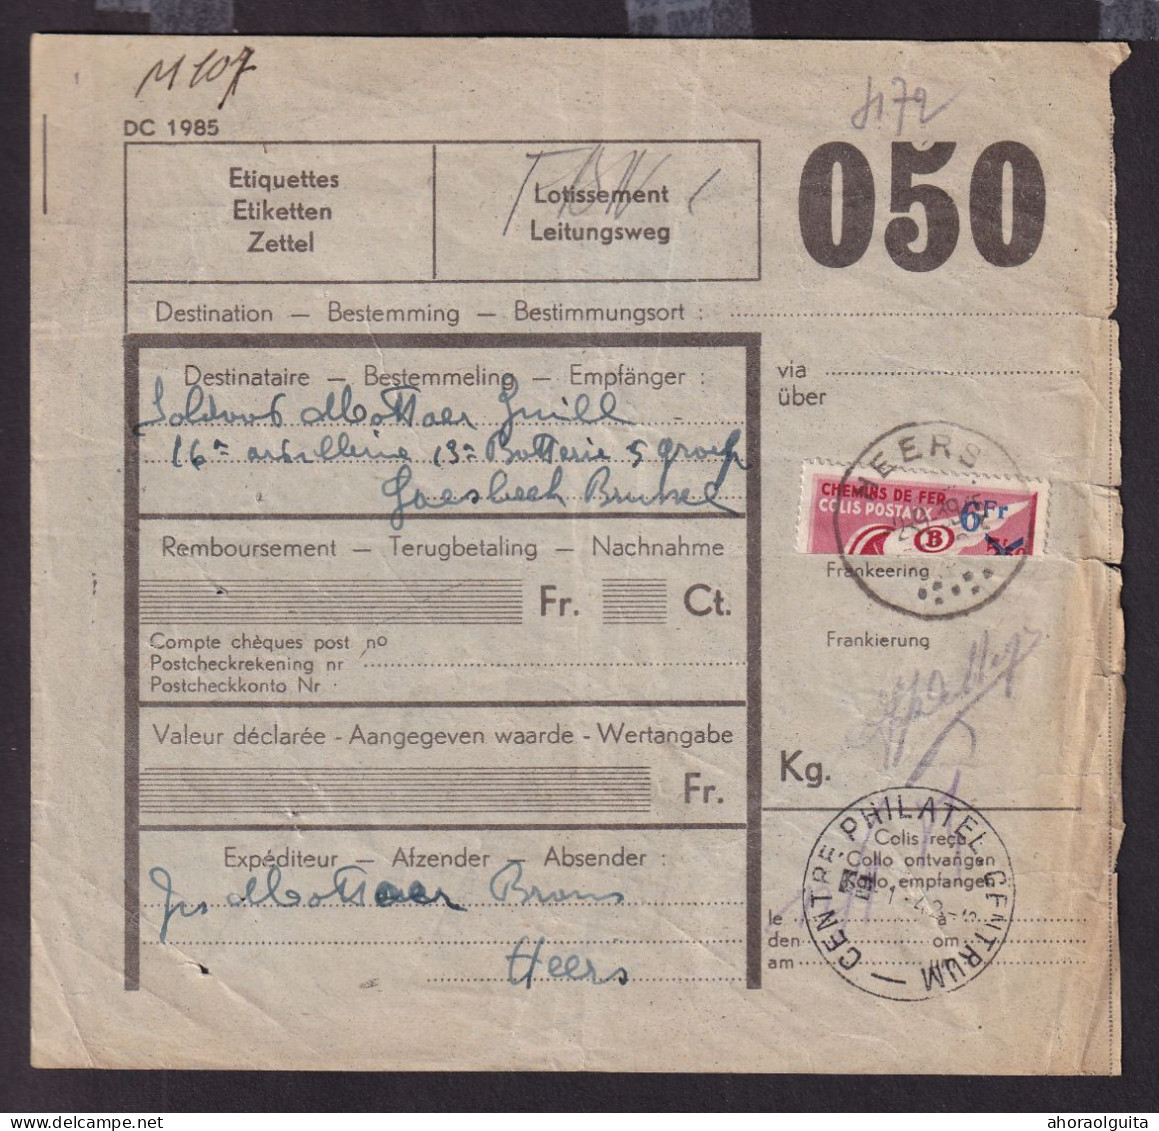 DDFF 766 -- Formule De Colis Militaire - TP Chemin De Fer Coupé En Deux Cachet Postal HEERS - 1er Jour 2 IX 1939 - Documenten & Fragmenten